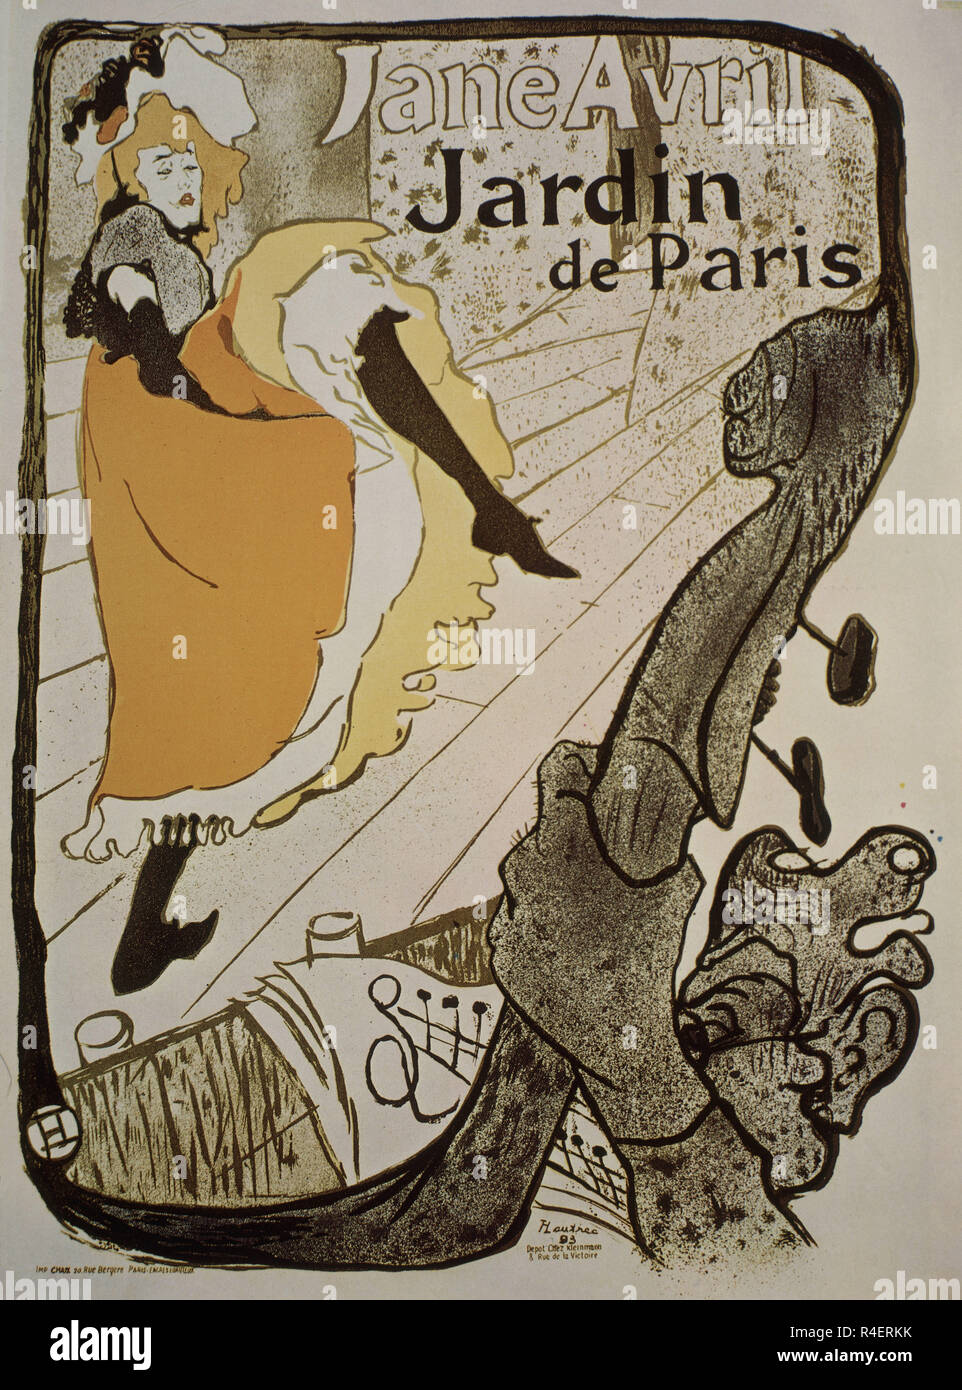 Affiche publicitaire de Jane Avril au Jardin de Paris - 1899 - 124x91,5 cm - couleur. Auteur : TOULOUSE-LAUTREC, HENRI DE. Emplacement : collection privée. La France. Banque D'Images